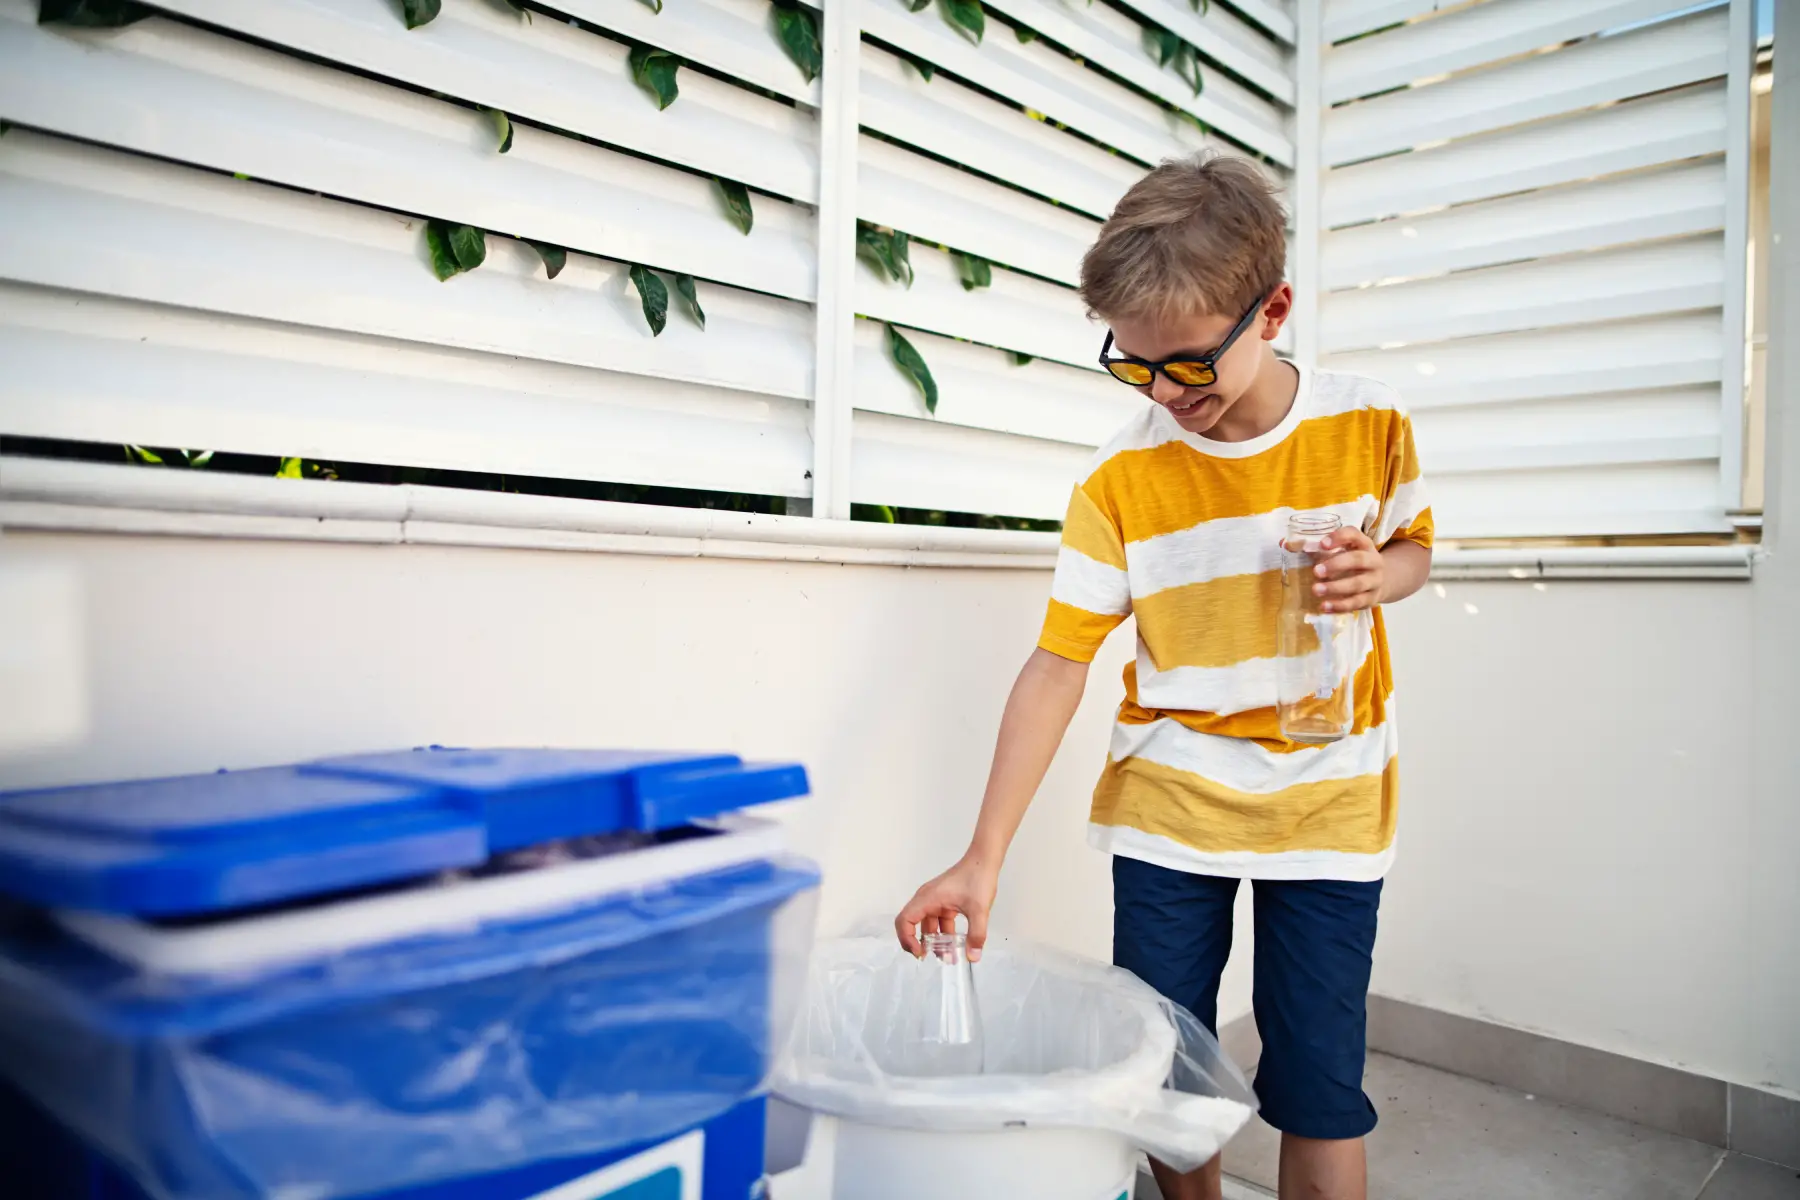 A boy puts a glass bottle in recycling bin